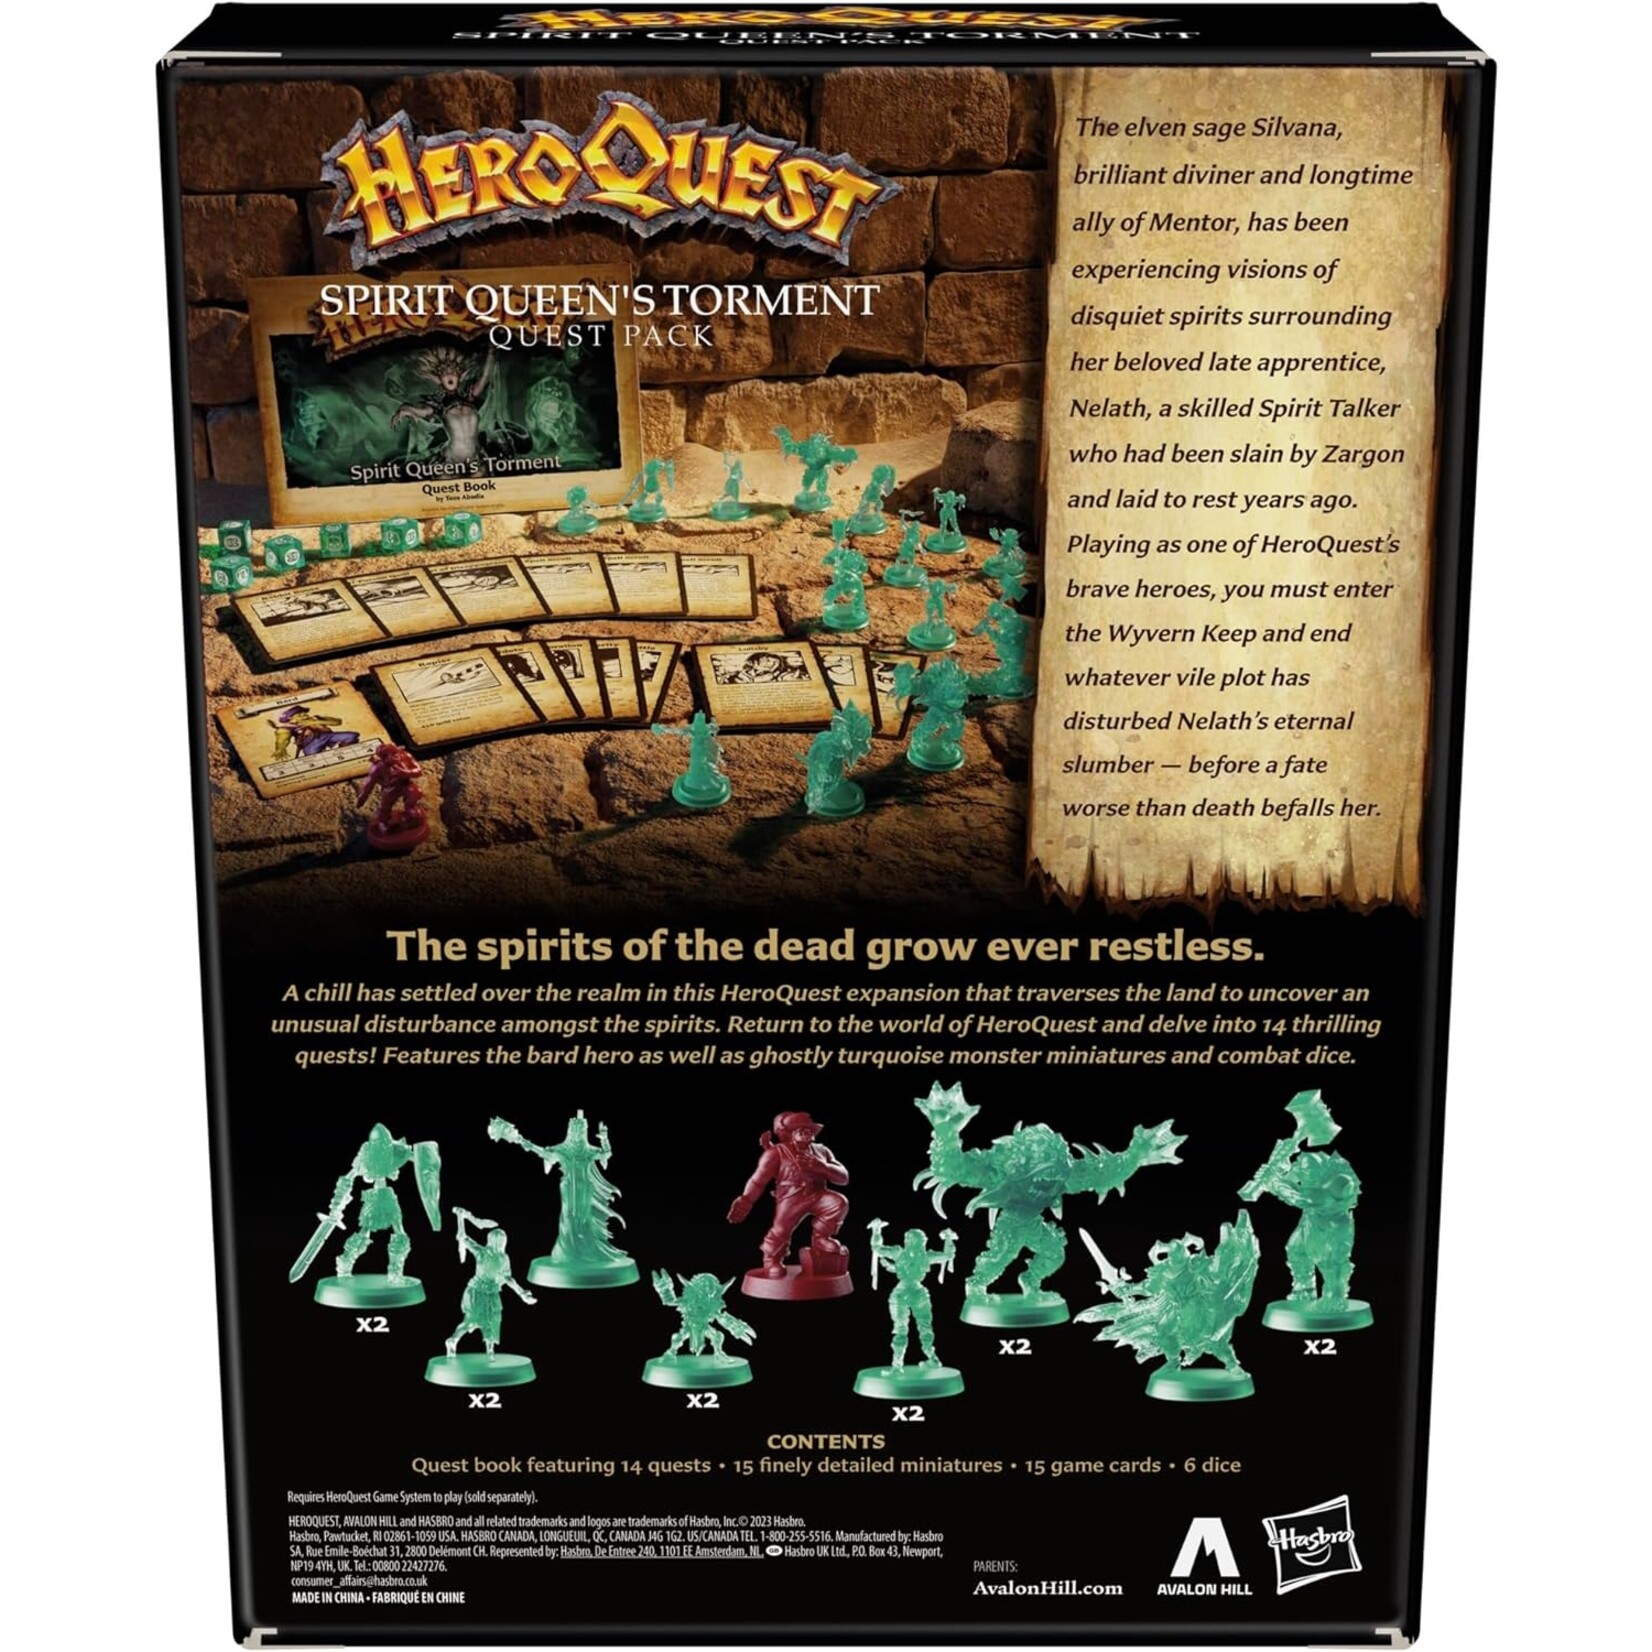 Avalon Hill Heroquest - Spirit Queen's Torment Quest Pack - EN